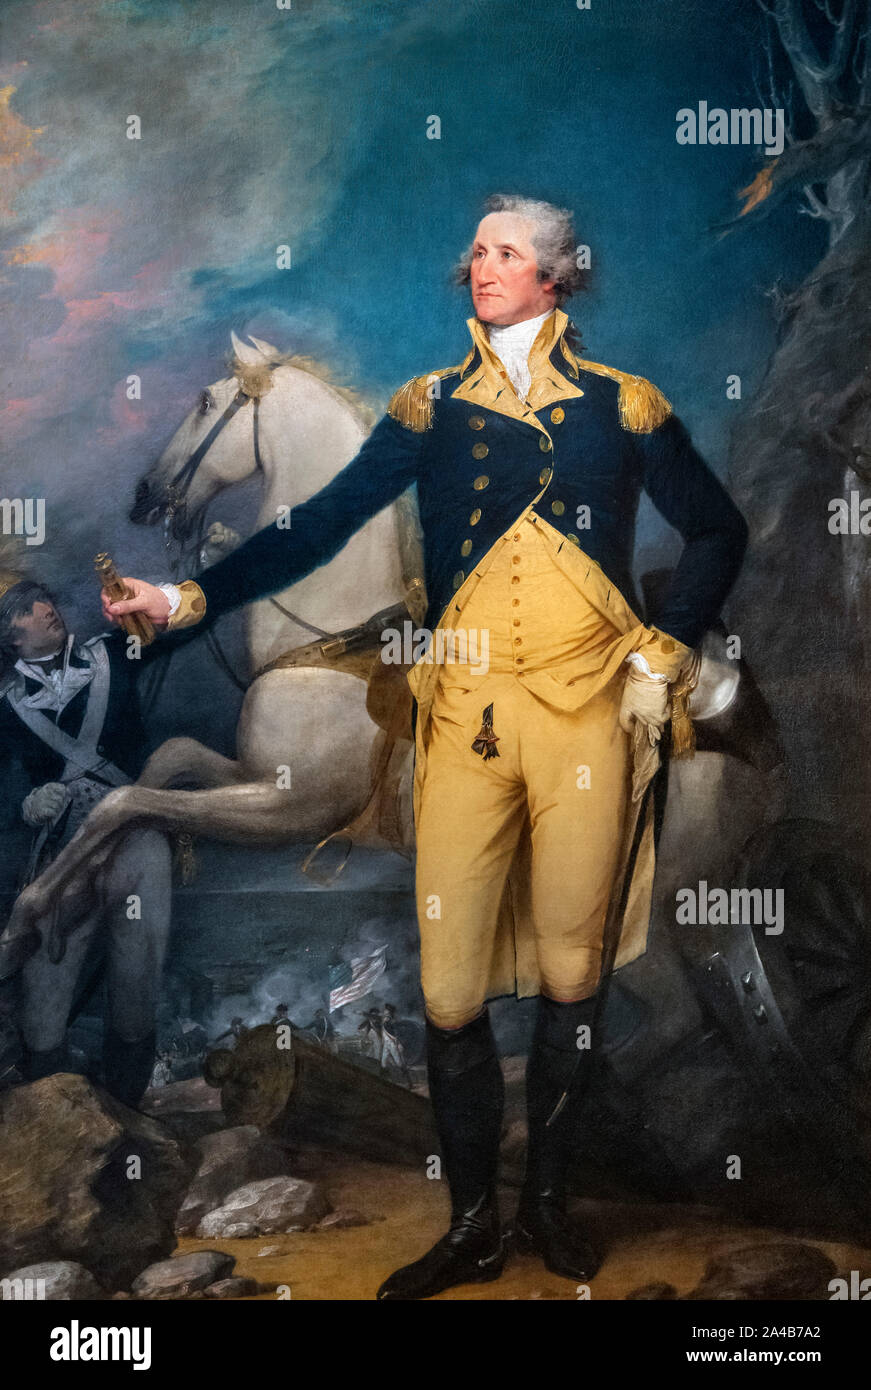 El General George Washington en Trenton en 1776 por John Trumbull, óleo sobre lienzo, 1792 Foto de stock